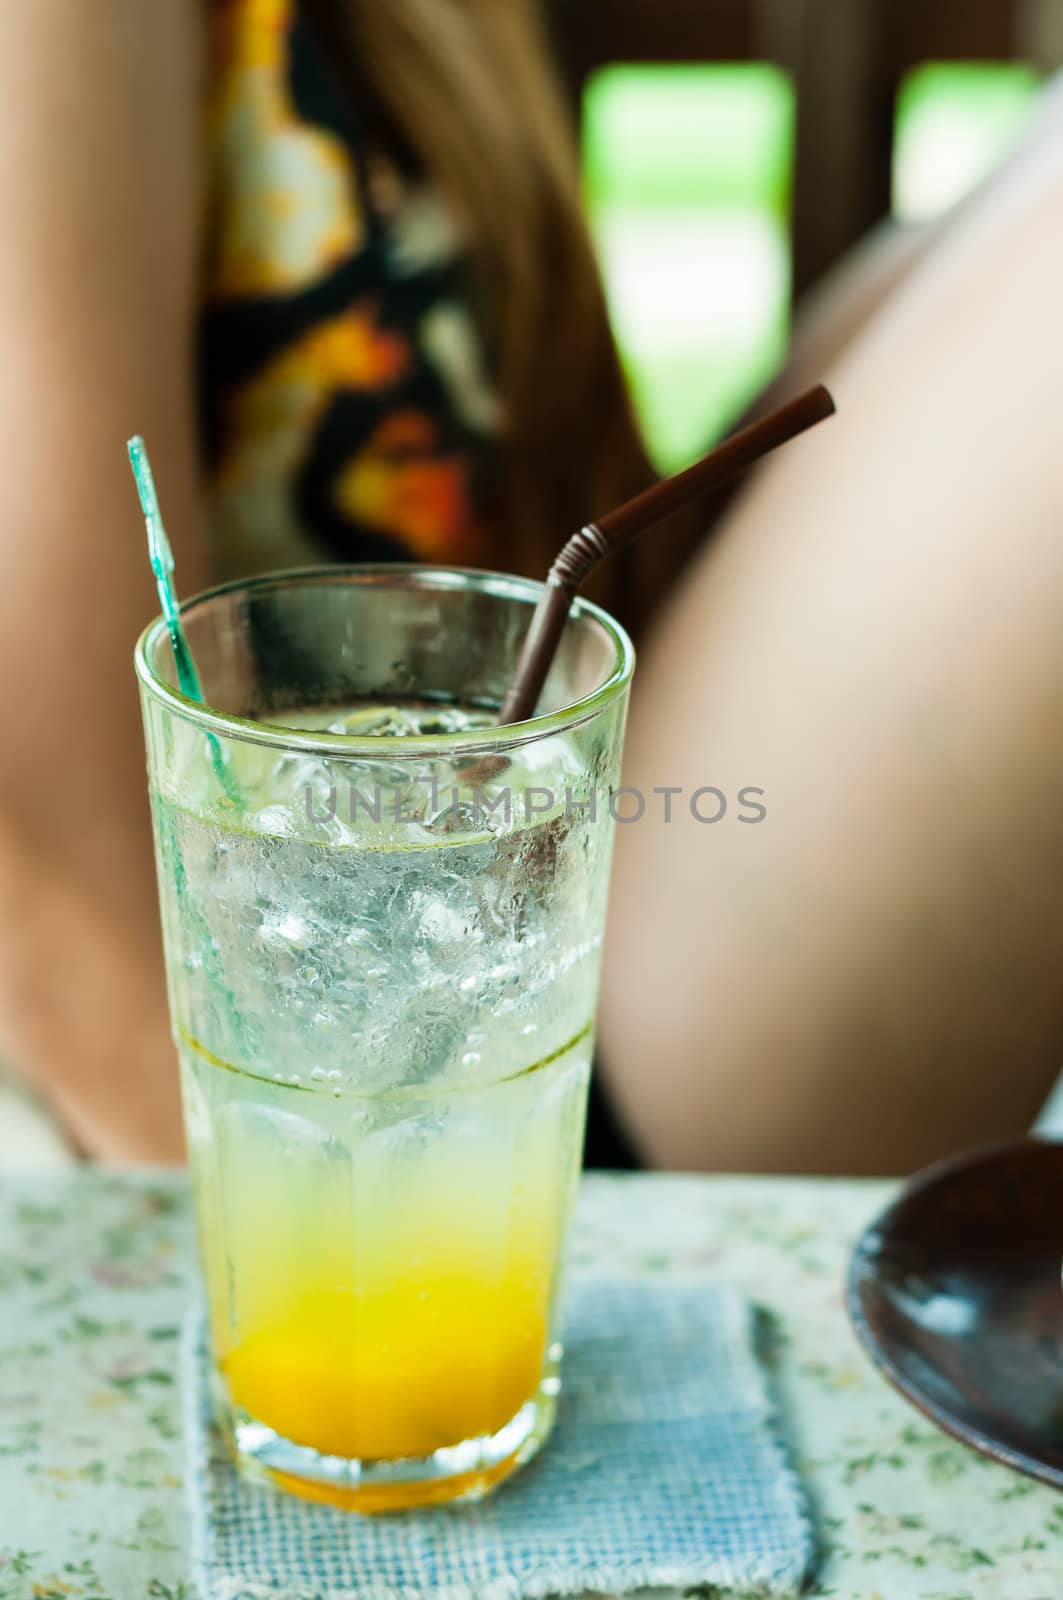 Mango Soda mix juice with girl background